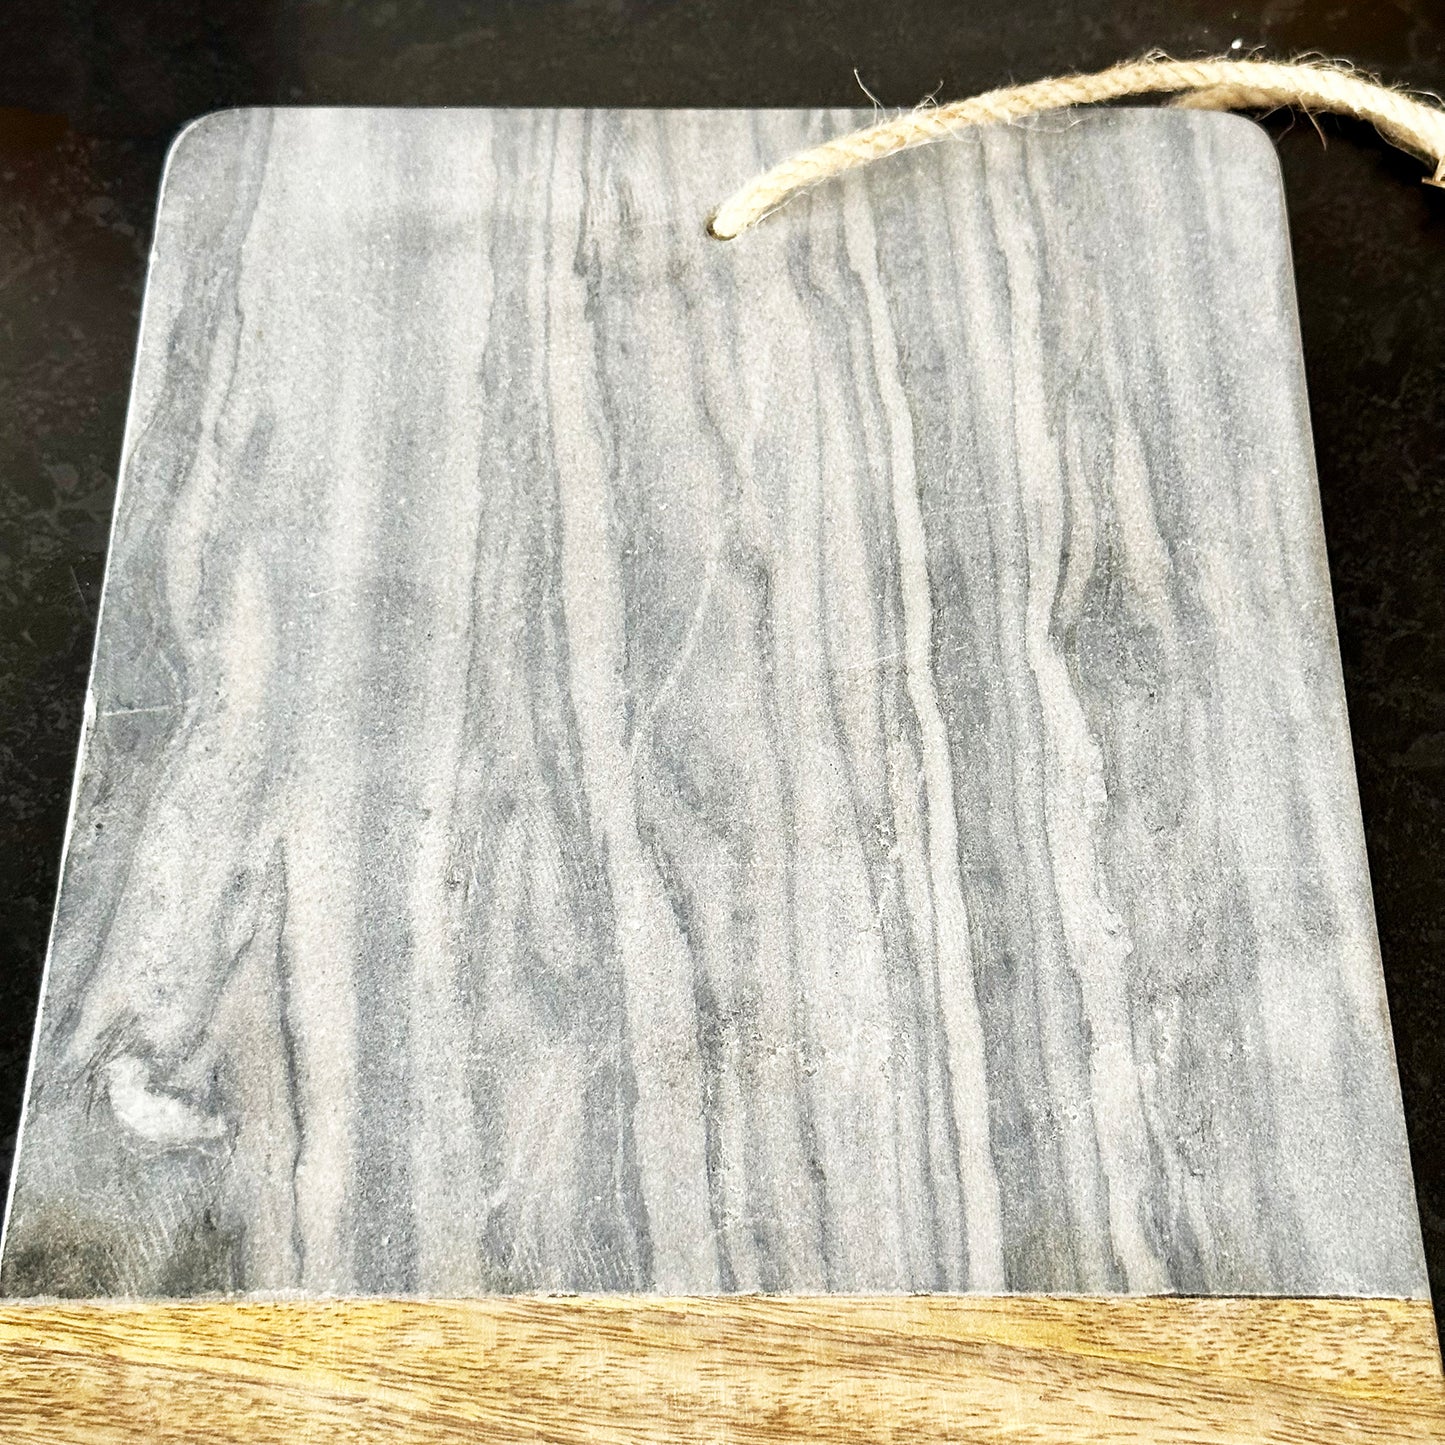 Grey Marble Chopping Board